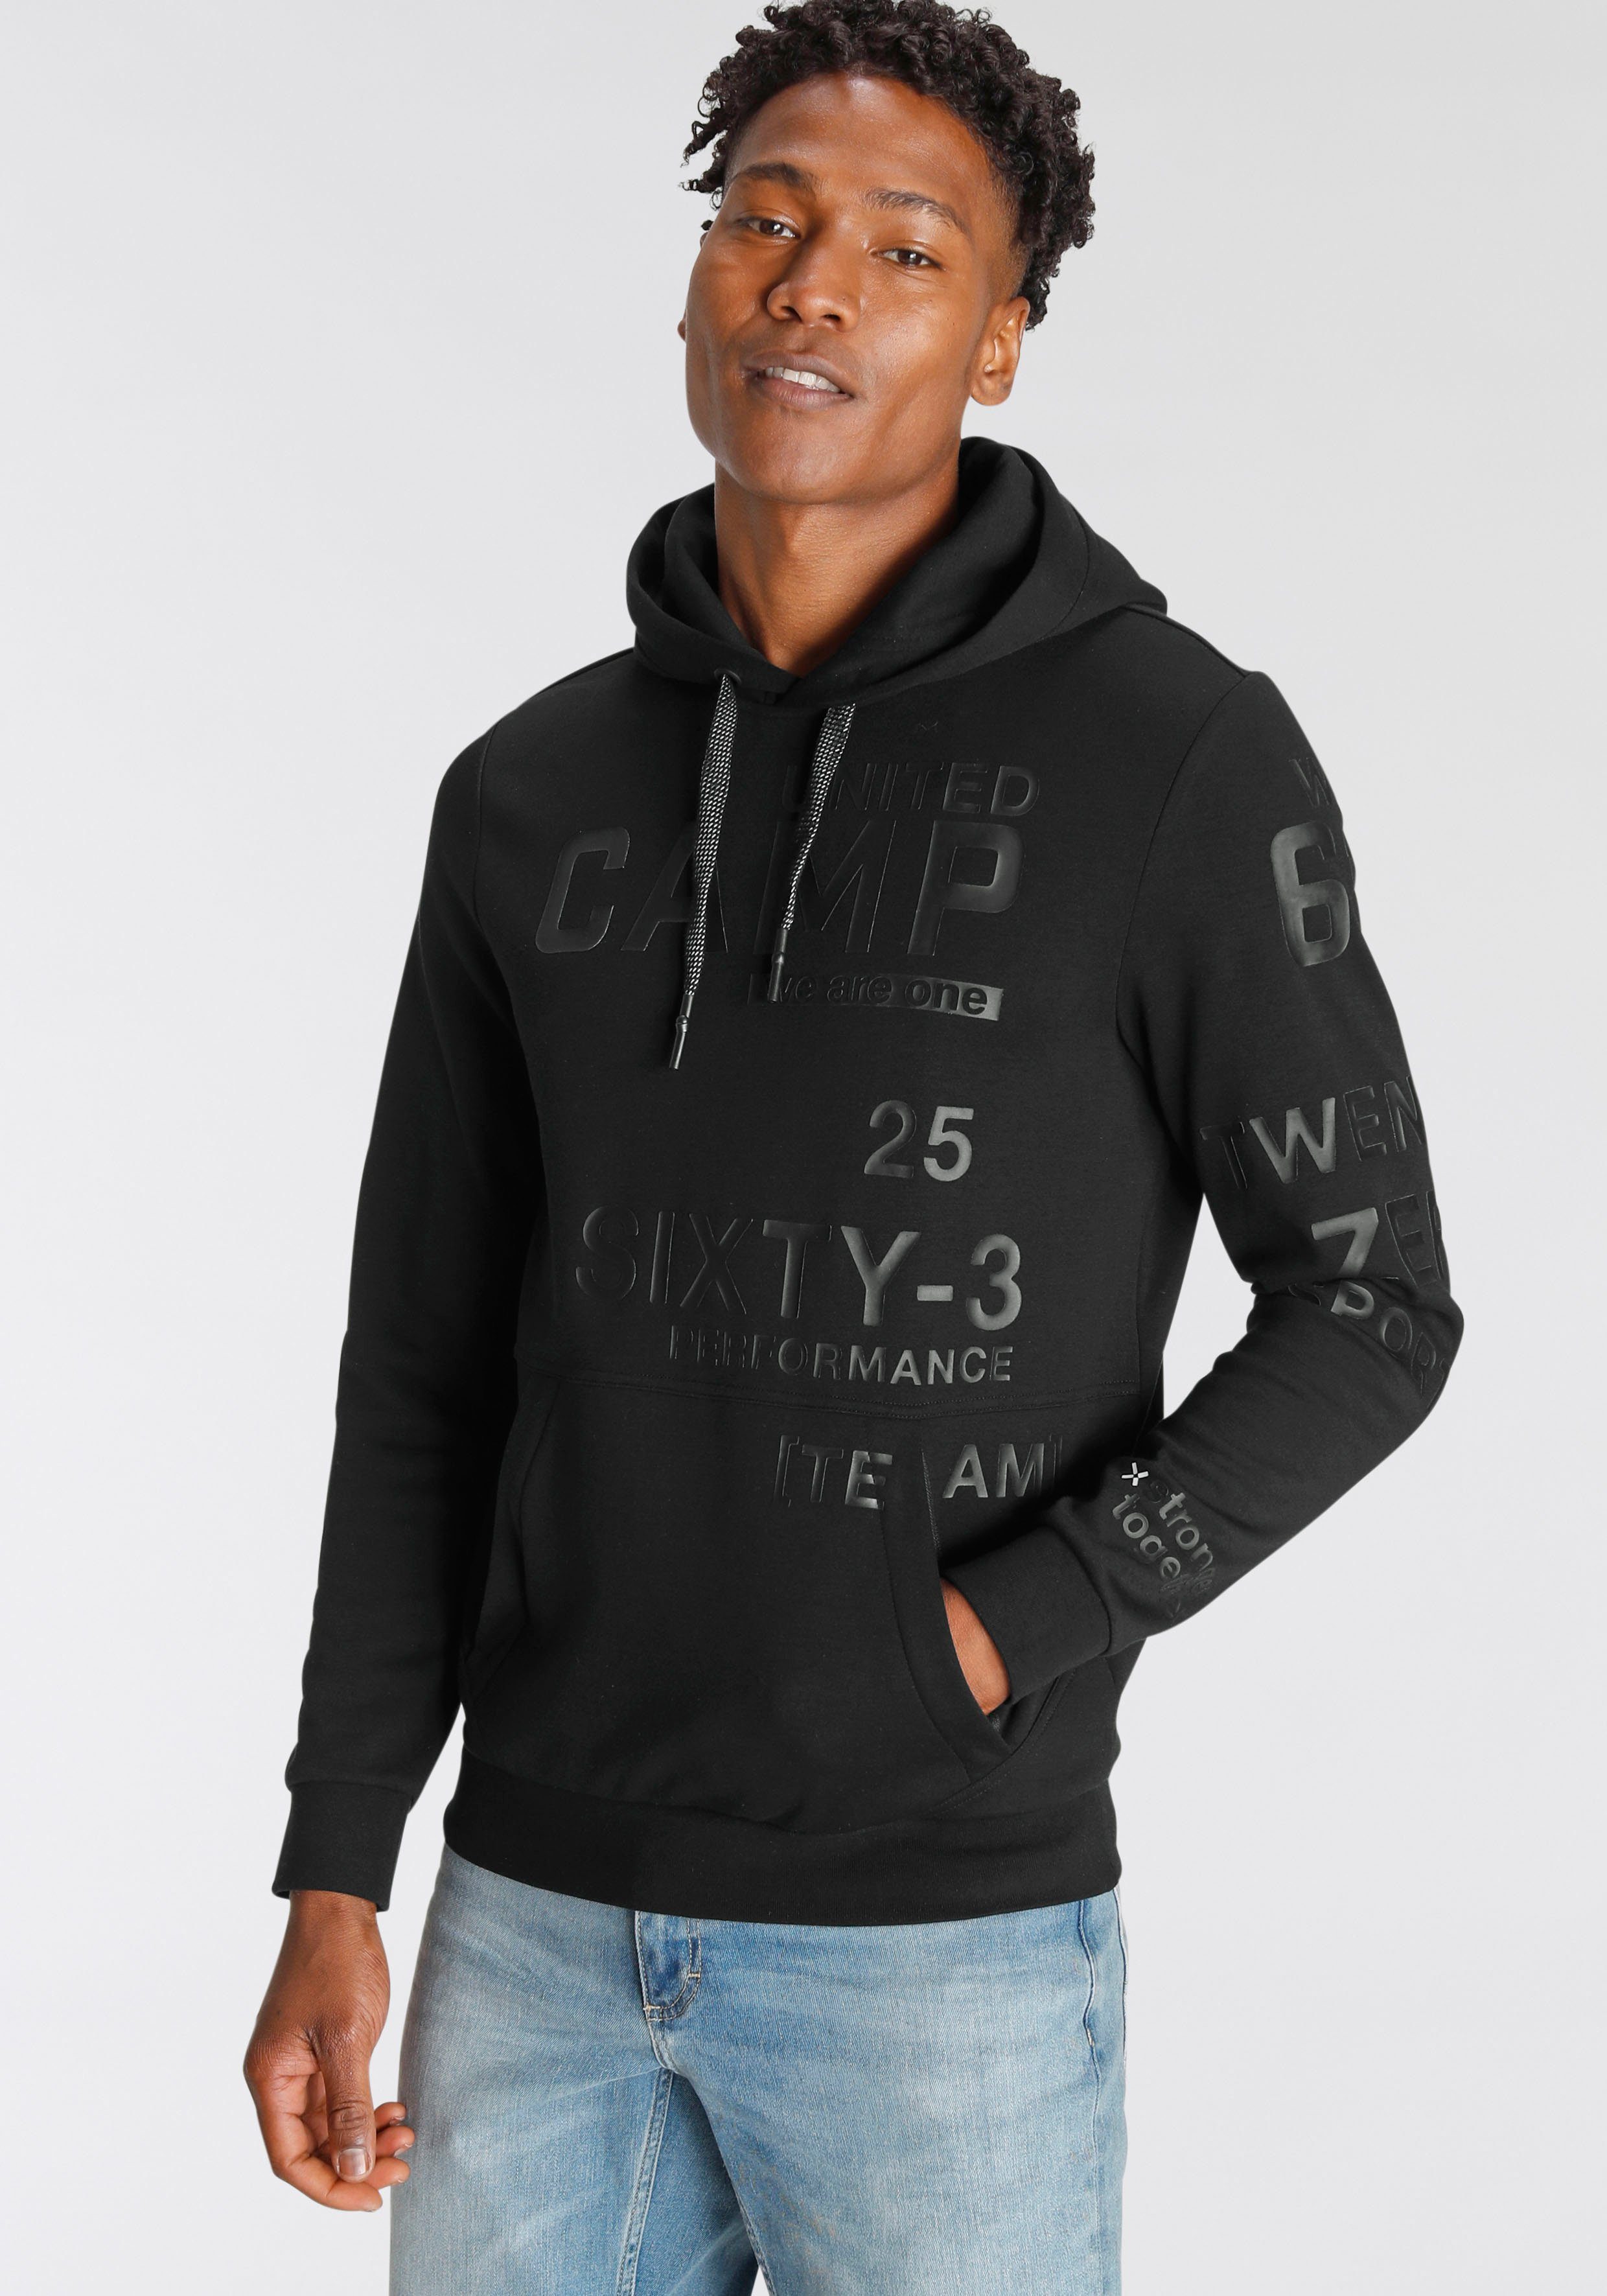 CAMP DAVID Sweatshirt mit Logoprägung online kaufen | OTTO